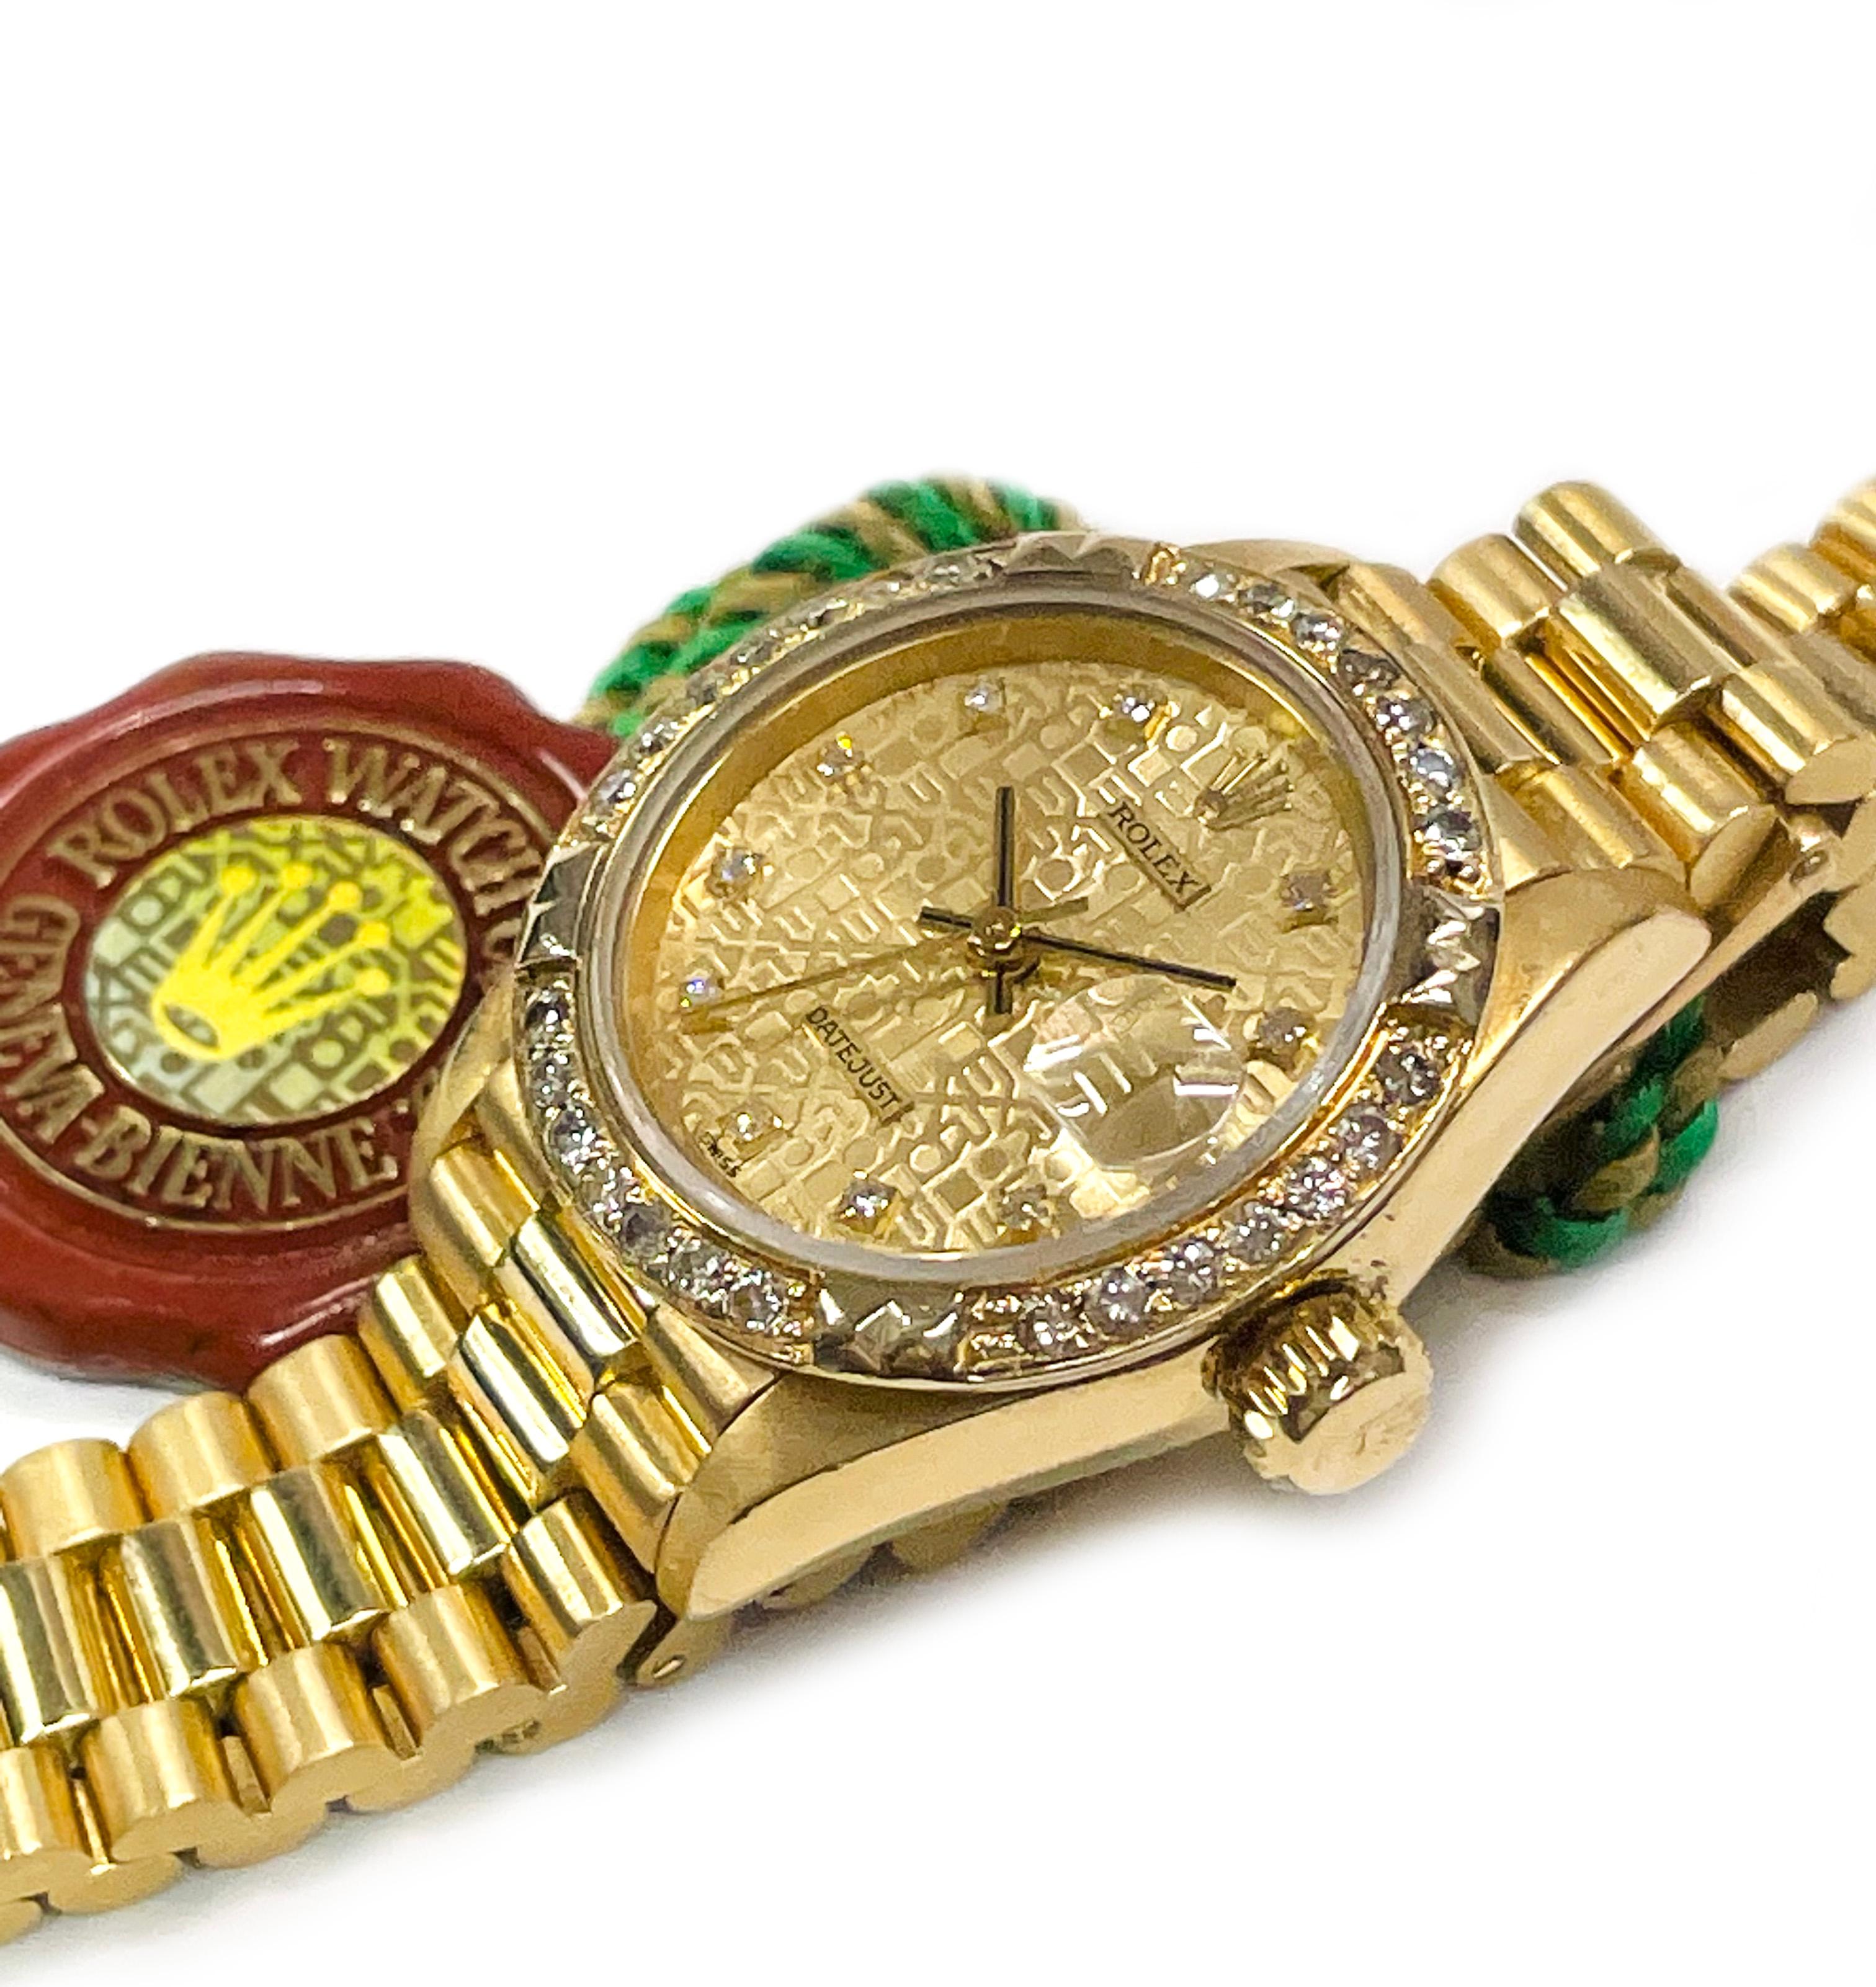 18 Karat Ladies Rolex Anniversary Datejust Diamond Bezel Watch. Superbe montre-bracelet avec cadran en or, aiguilles des heures, des minutes et des secondes en or, heures en diamant (sauf la 12e heure) et lunette en diamant. Le nom ROLEX est répété